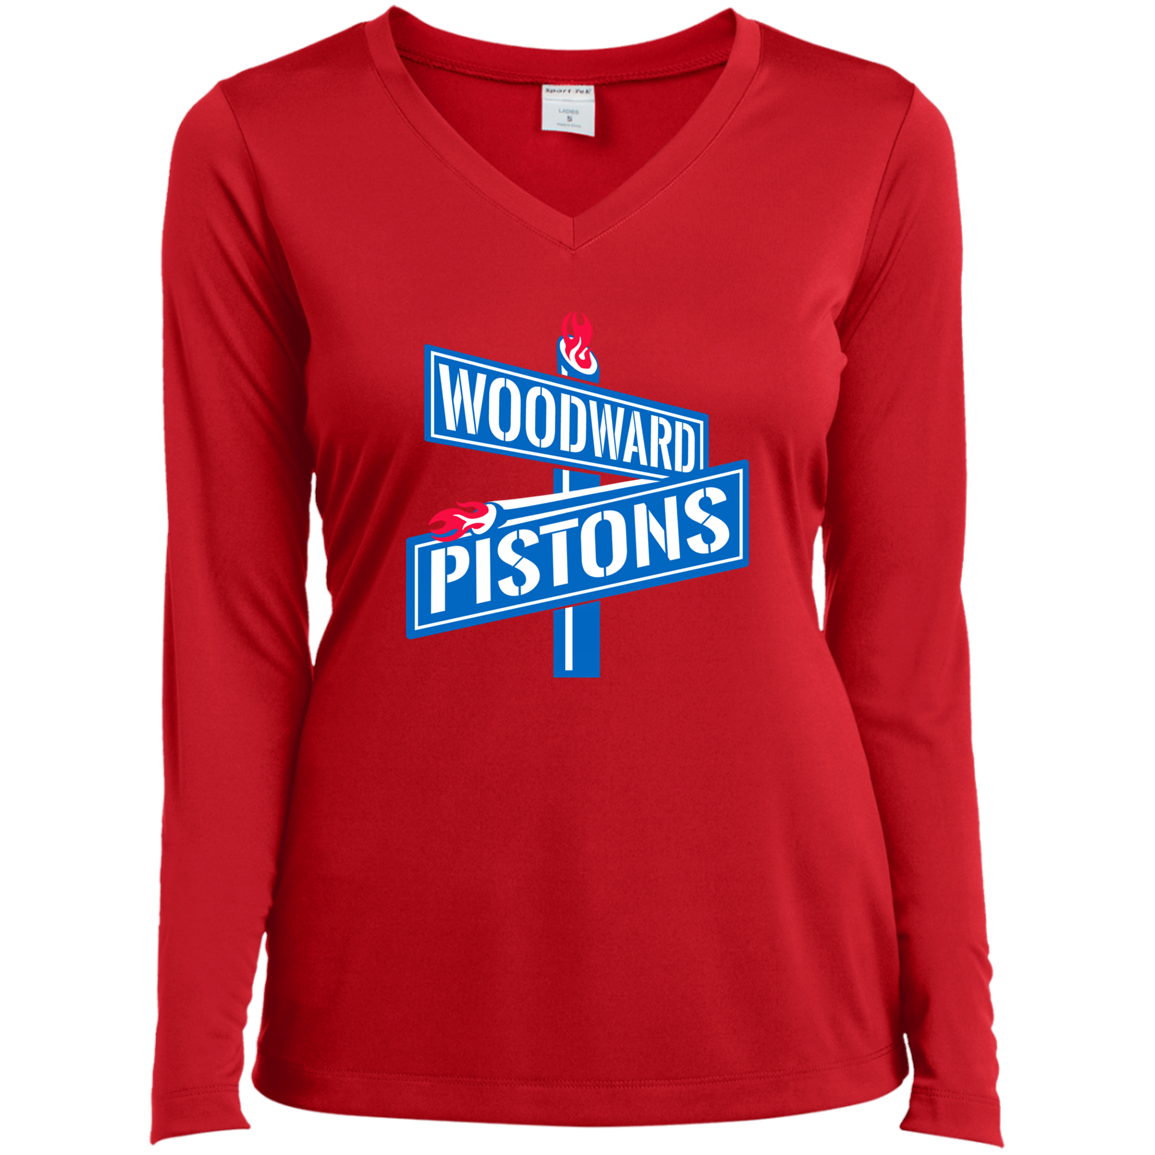 WOODWARD PISTONS Women’s Long Sleeve Tee